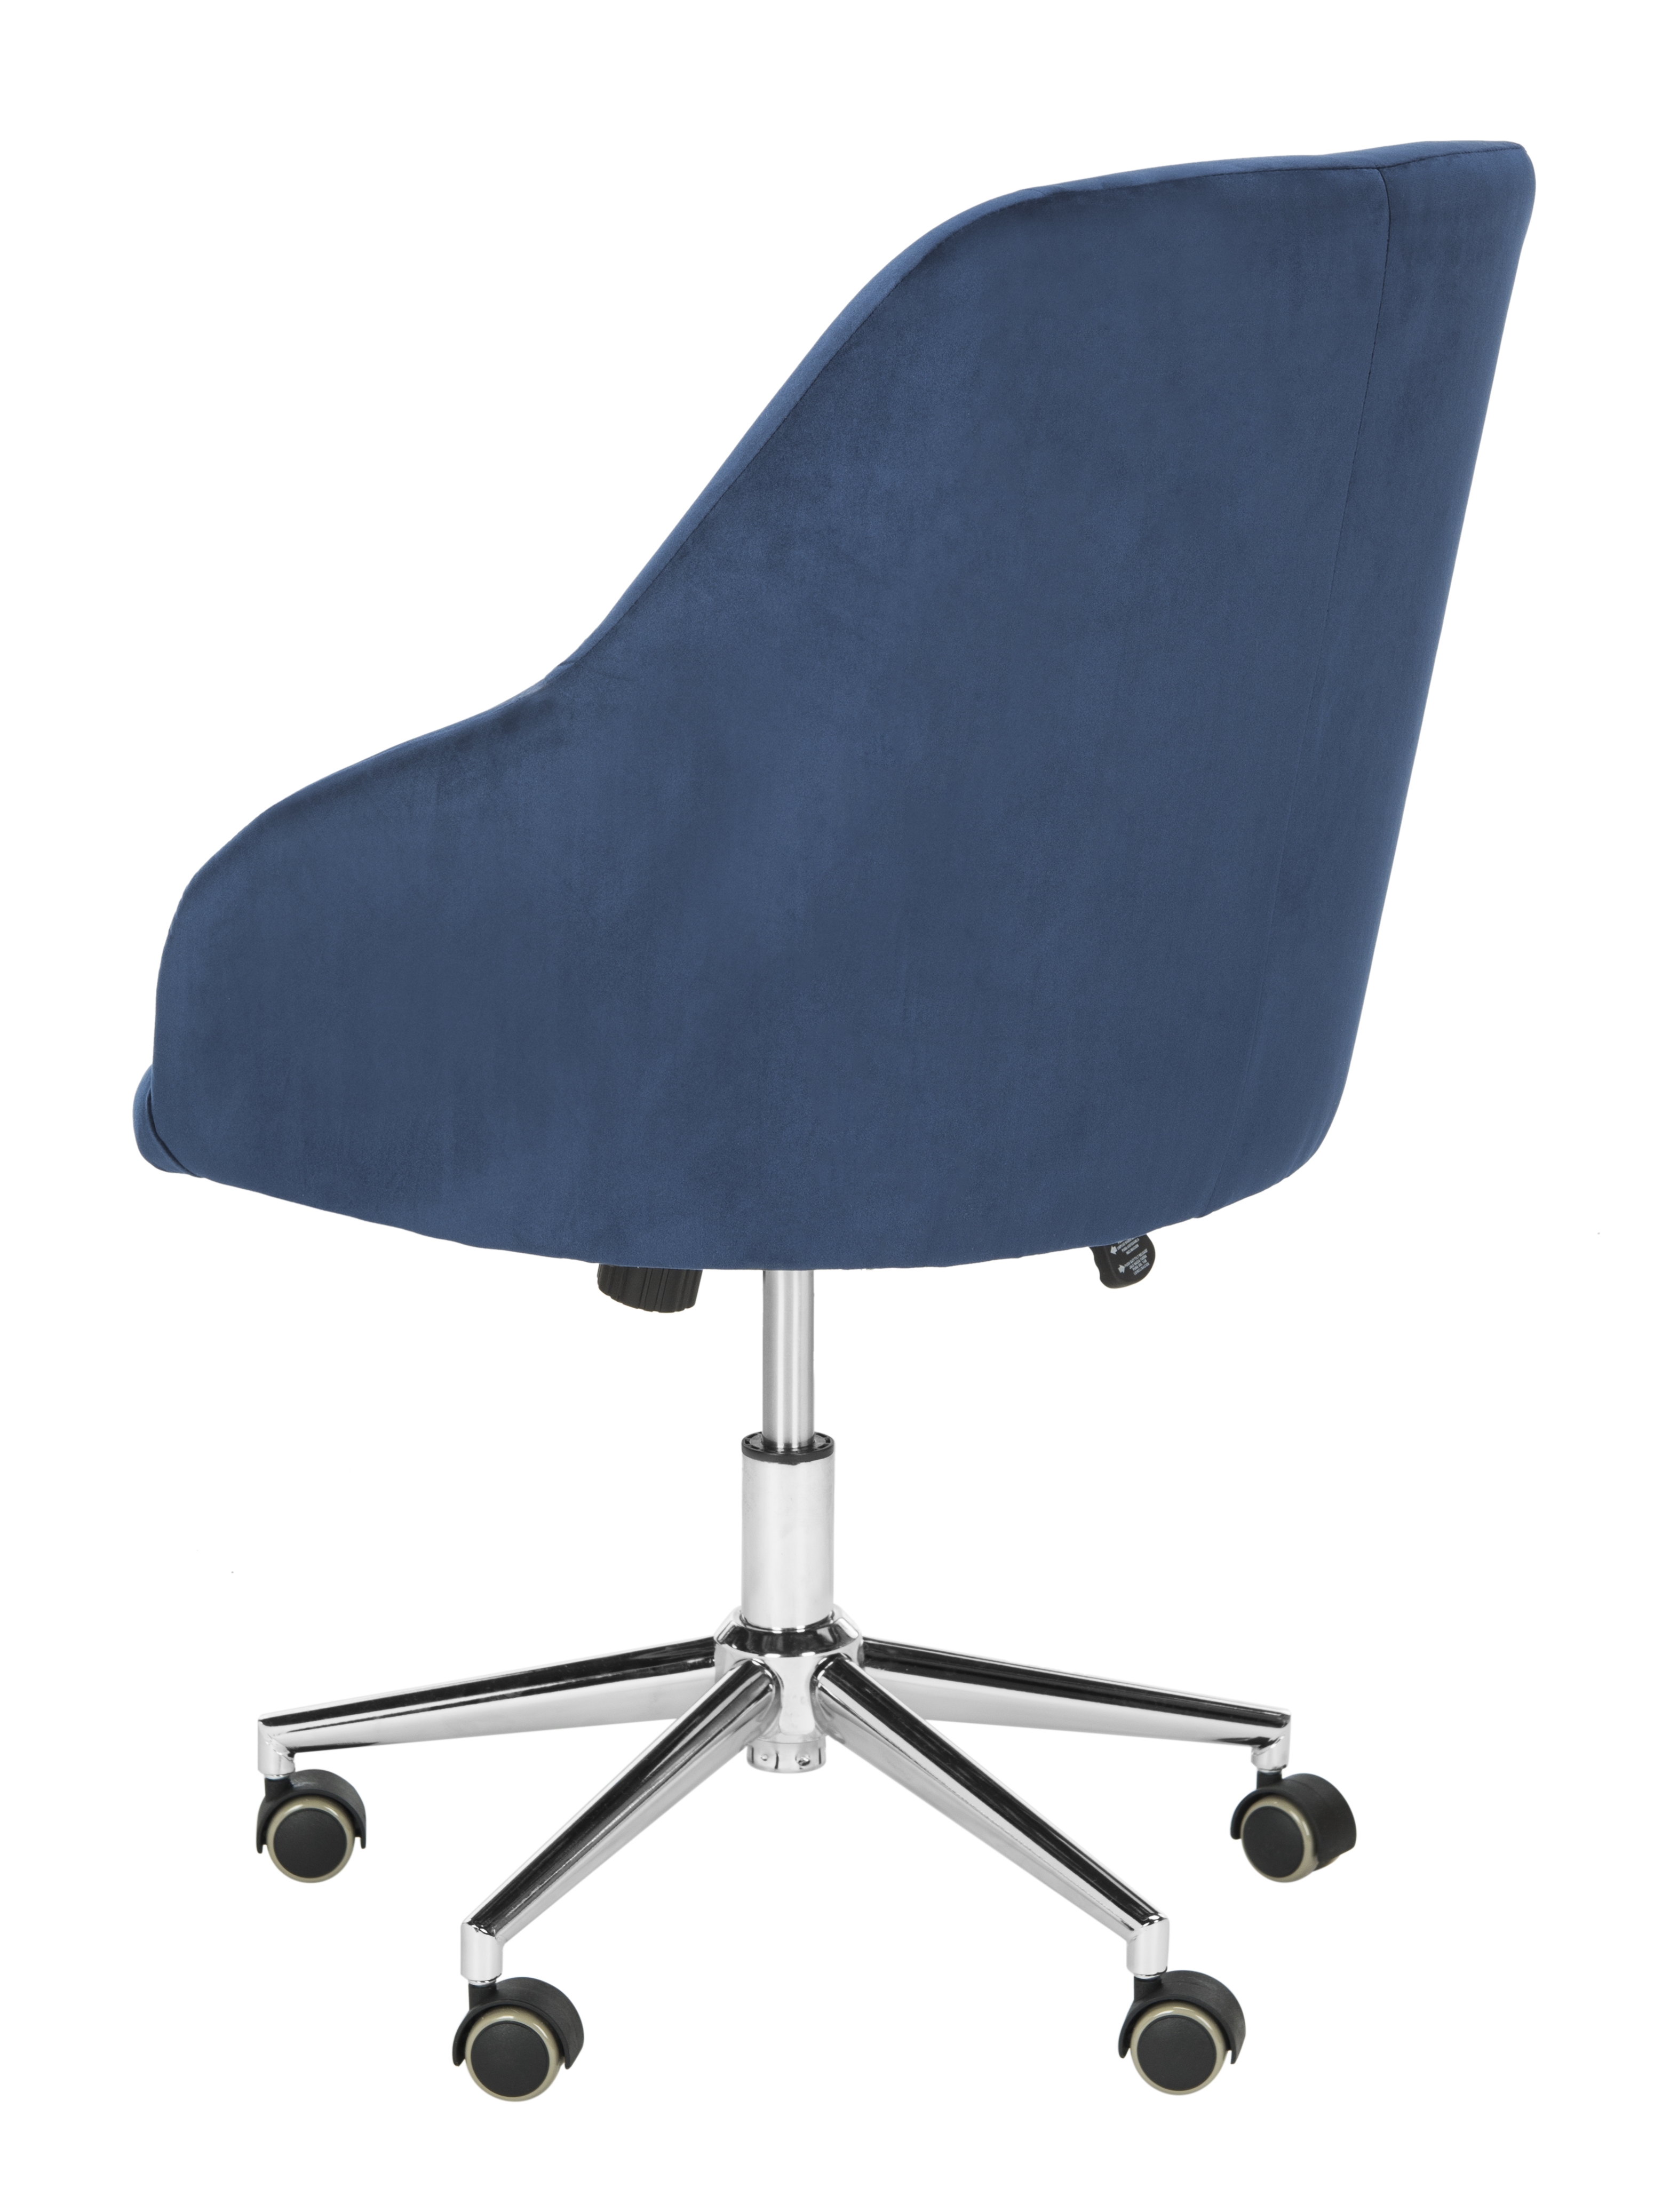 Adrienne Velvet Chrome Leg Swivel Office Chair - Navy/Chrome - Safavieh - Image 4